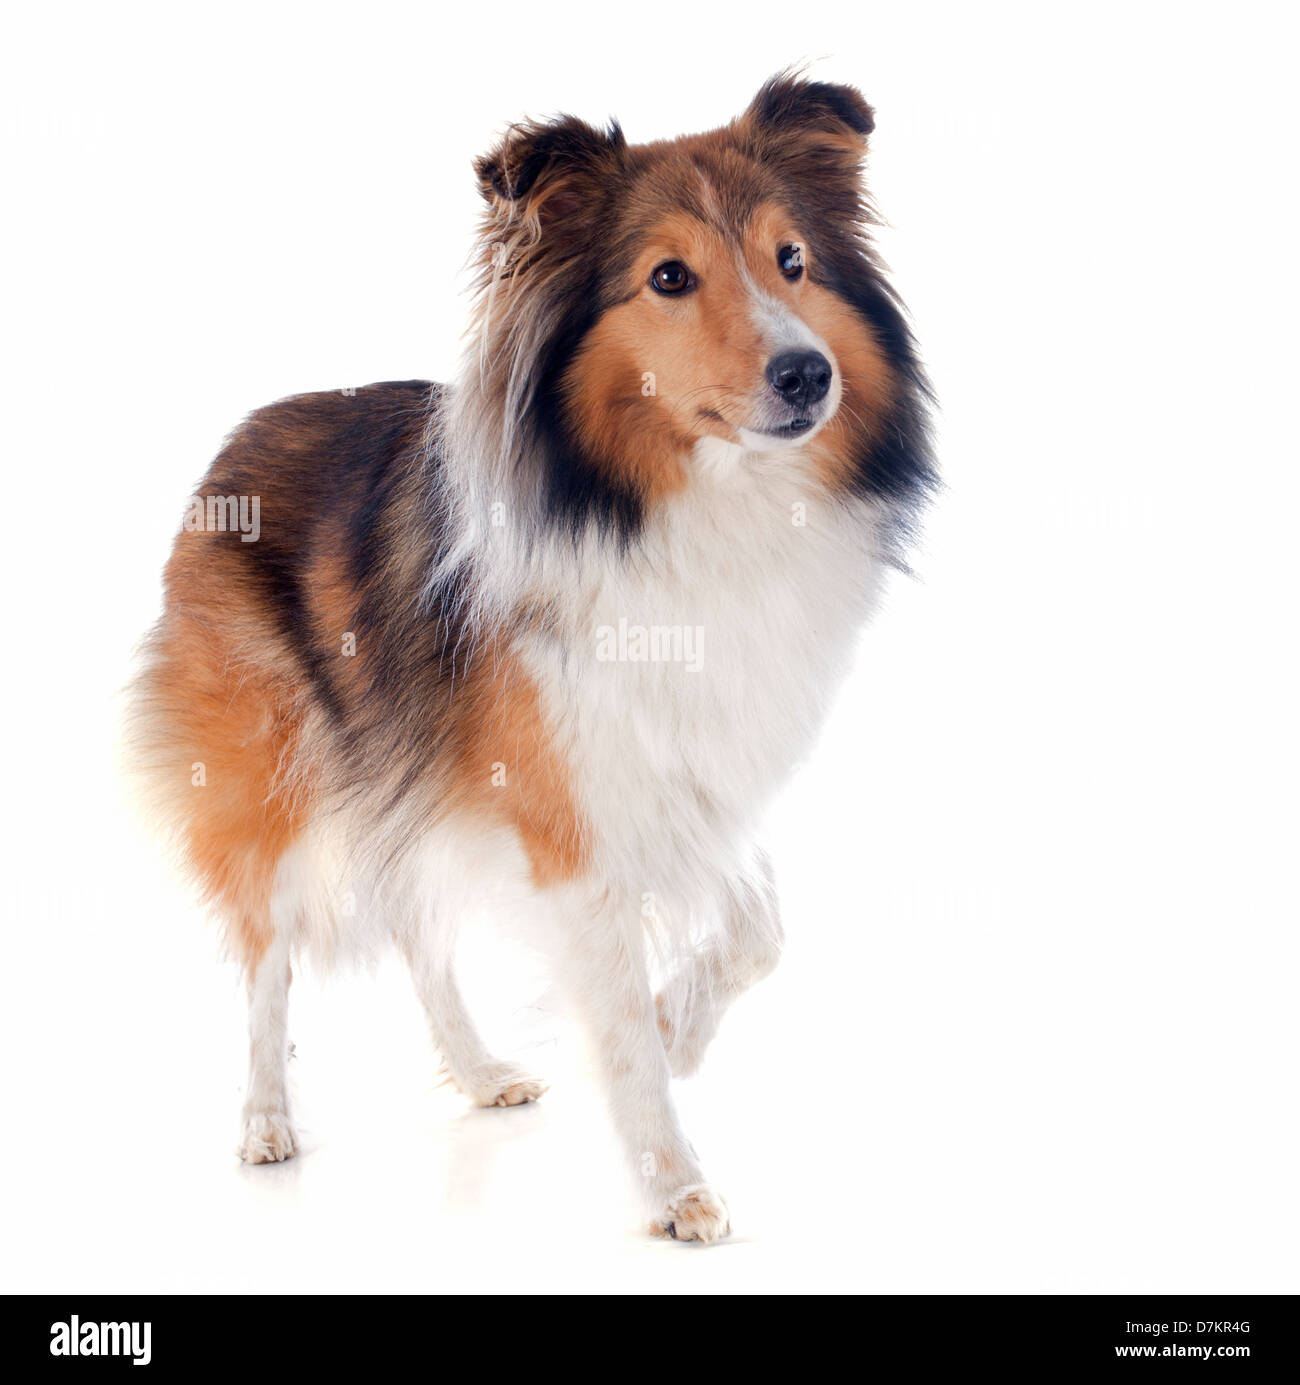 Ritratto di una razza di cane shetland davanti a uno sfondo bianco Foto Stock